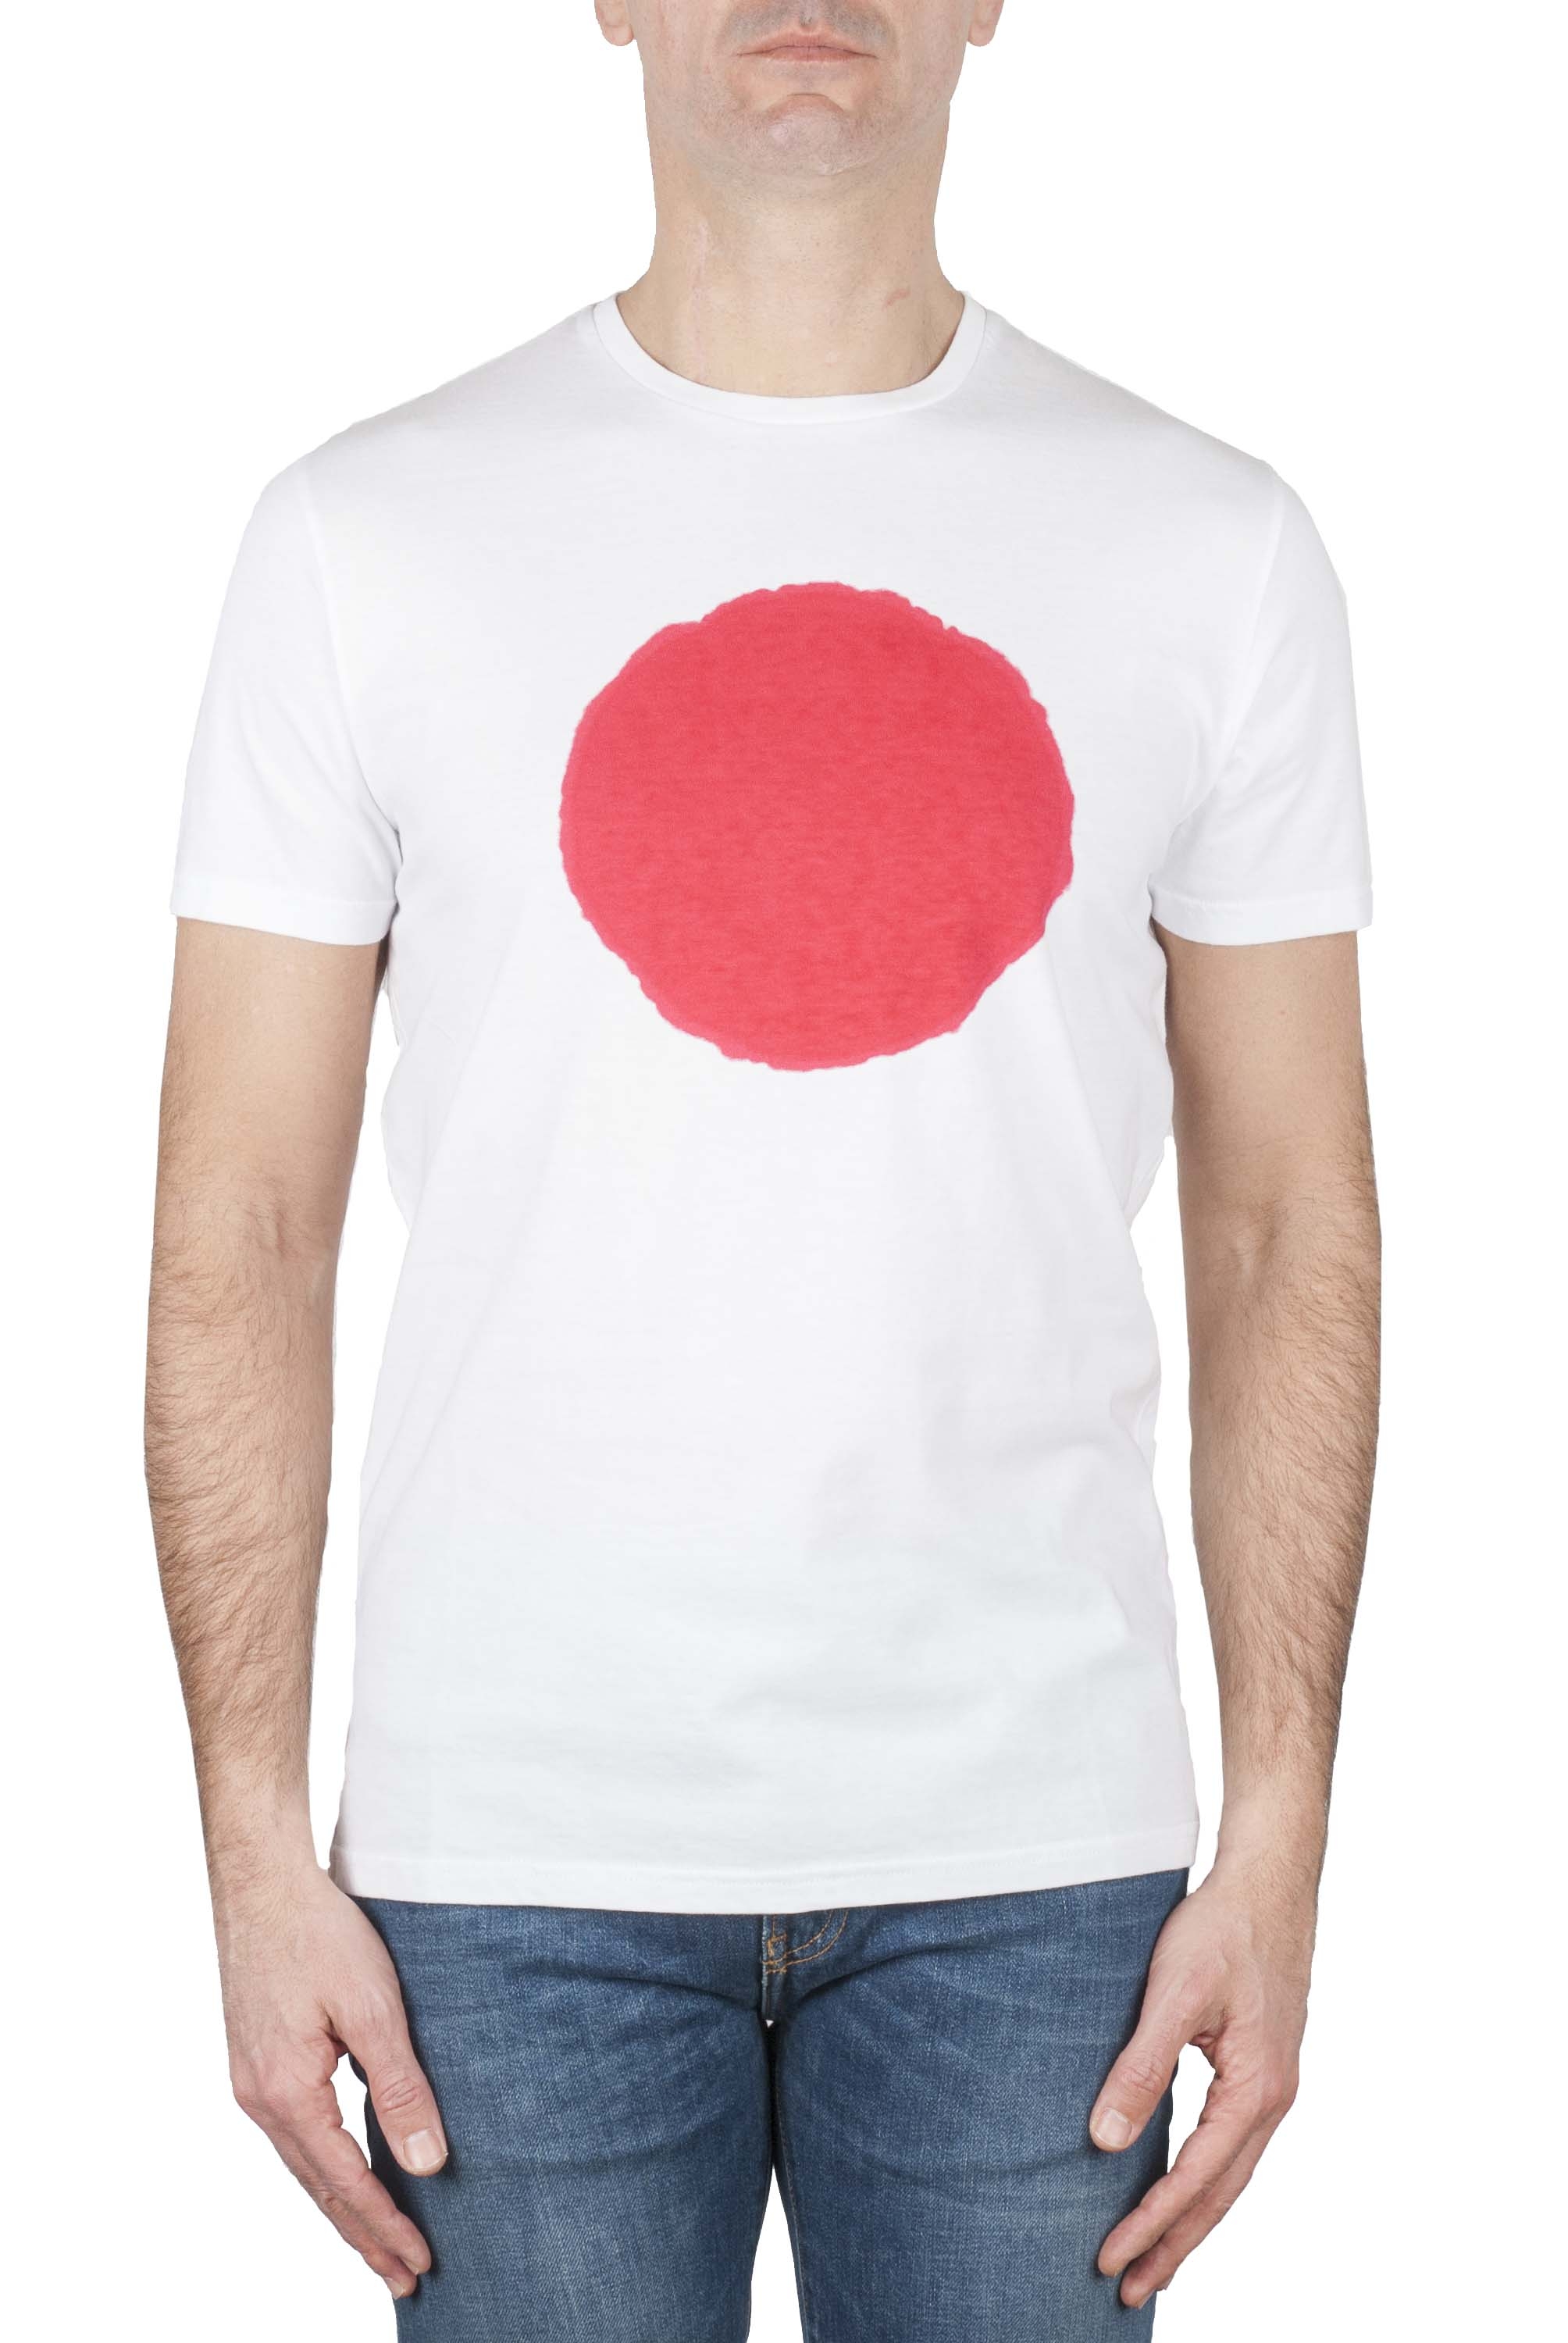 SBU 01170 T-shirt girocollo classica a maniche corte in cotone grafica stampata rossa e bianca 01